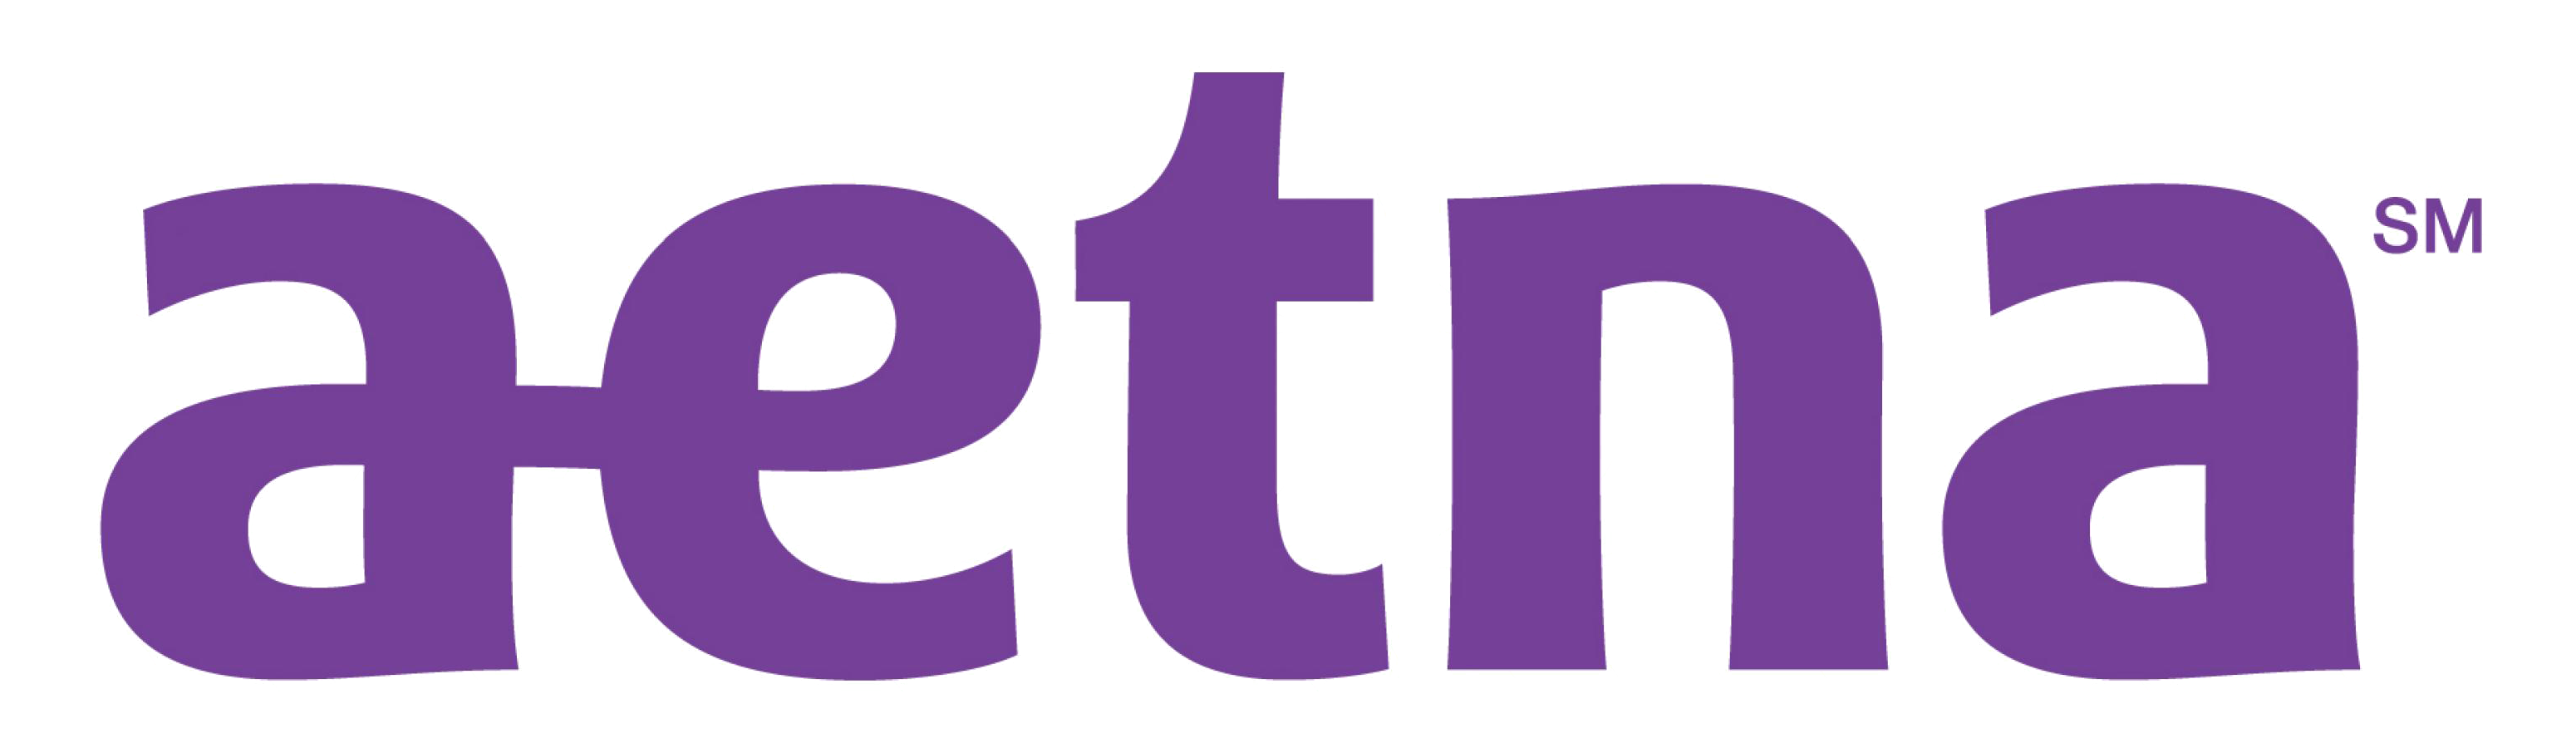 Aetna Logo Png - KibrisPDR